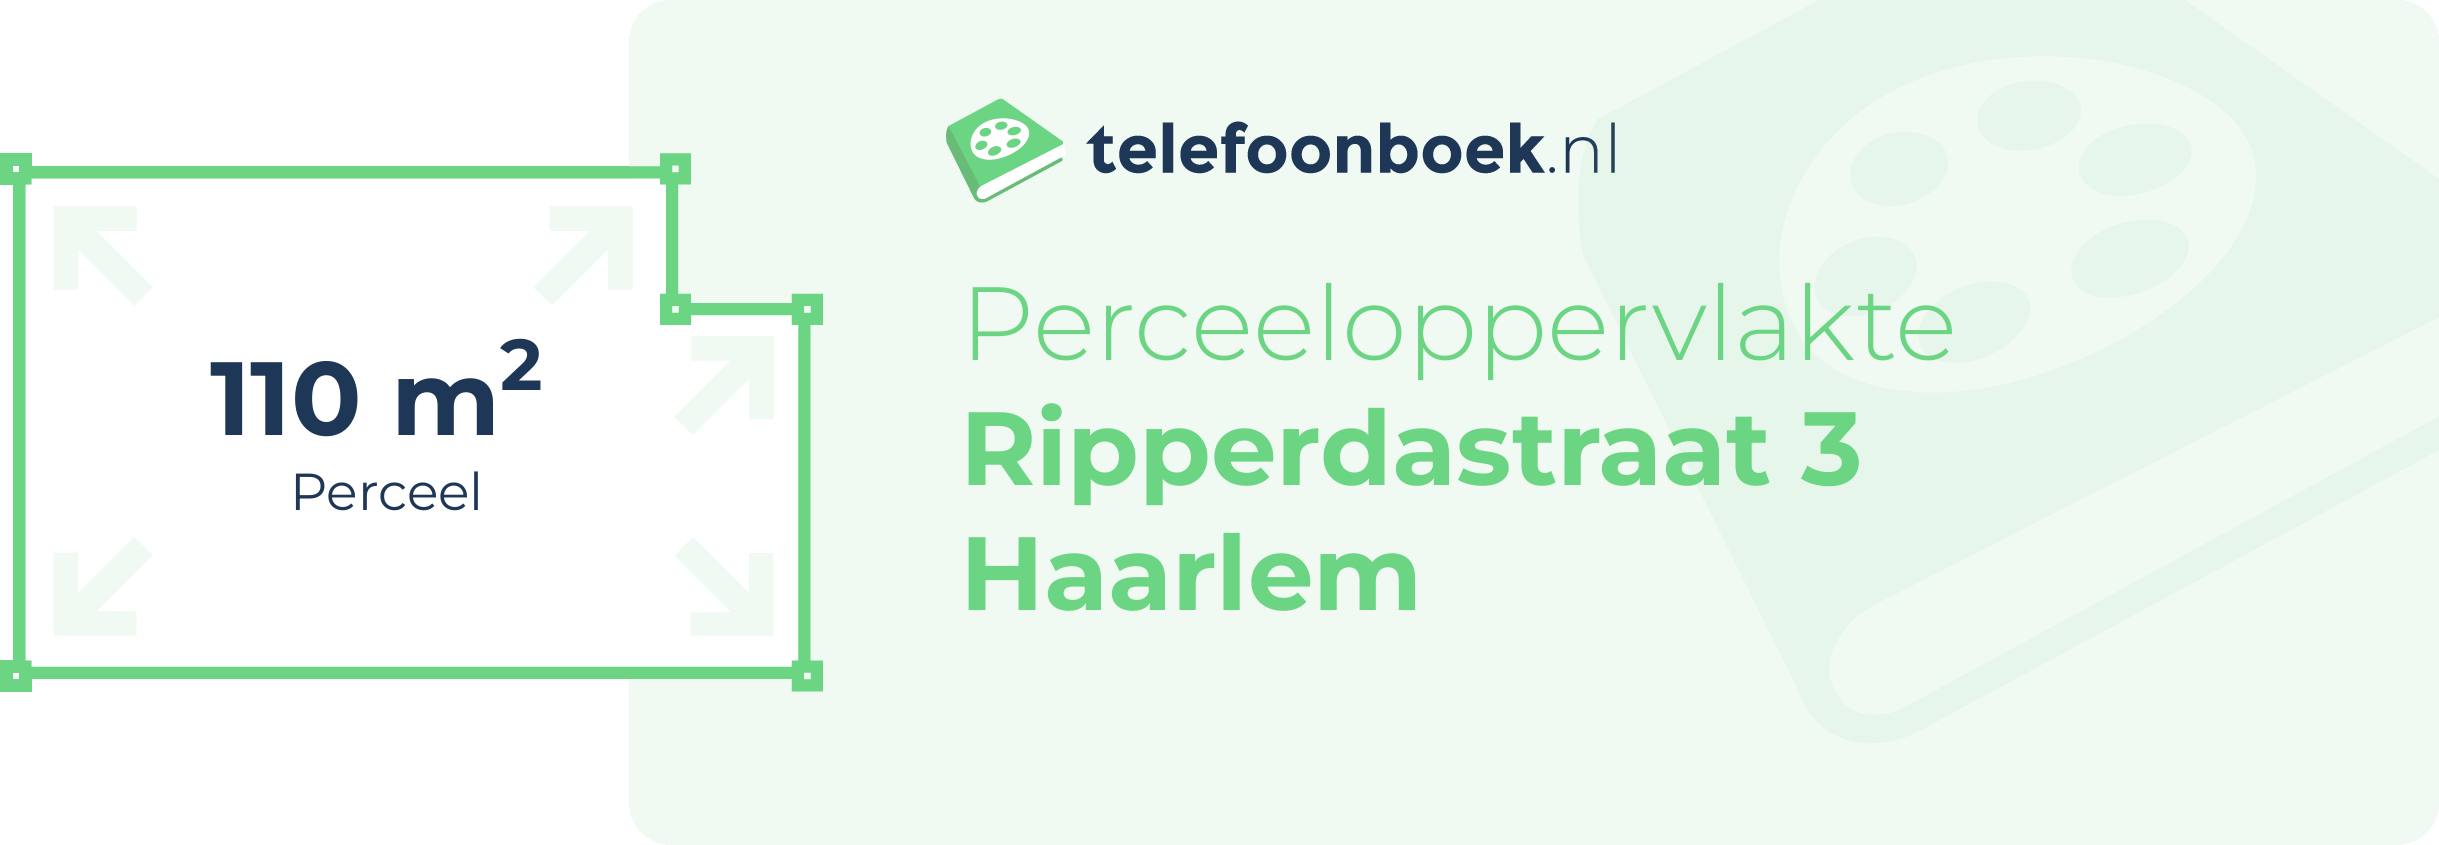 Perceeloppervlakte Ripperdastraat 3 Haarlem